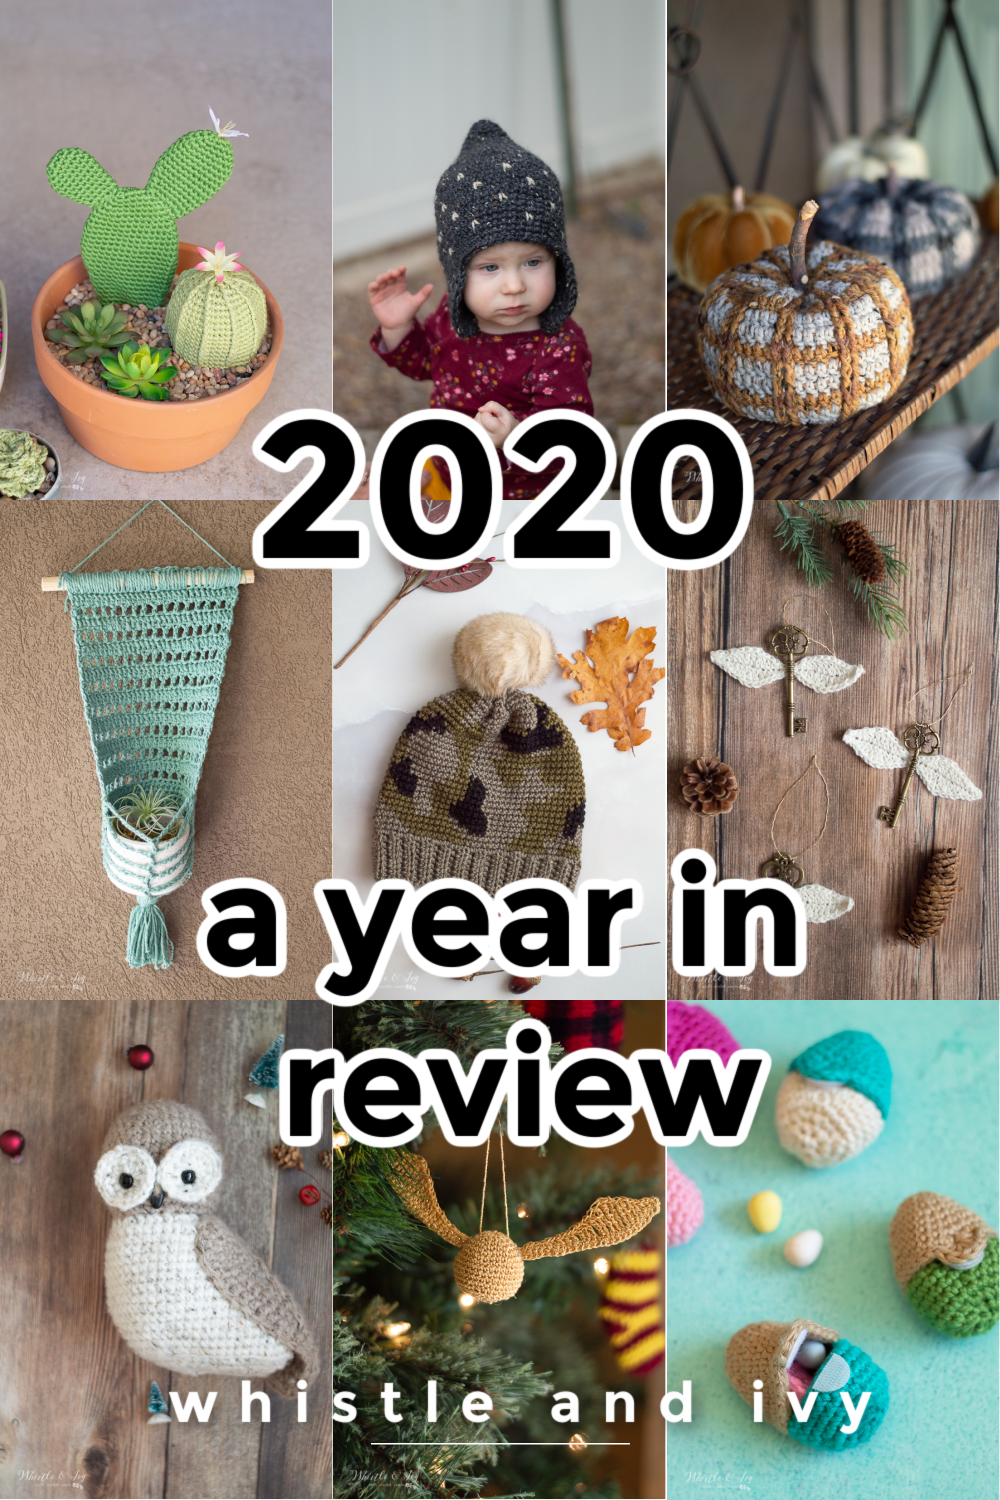 Twenty- Twenty: A year in review